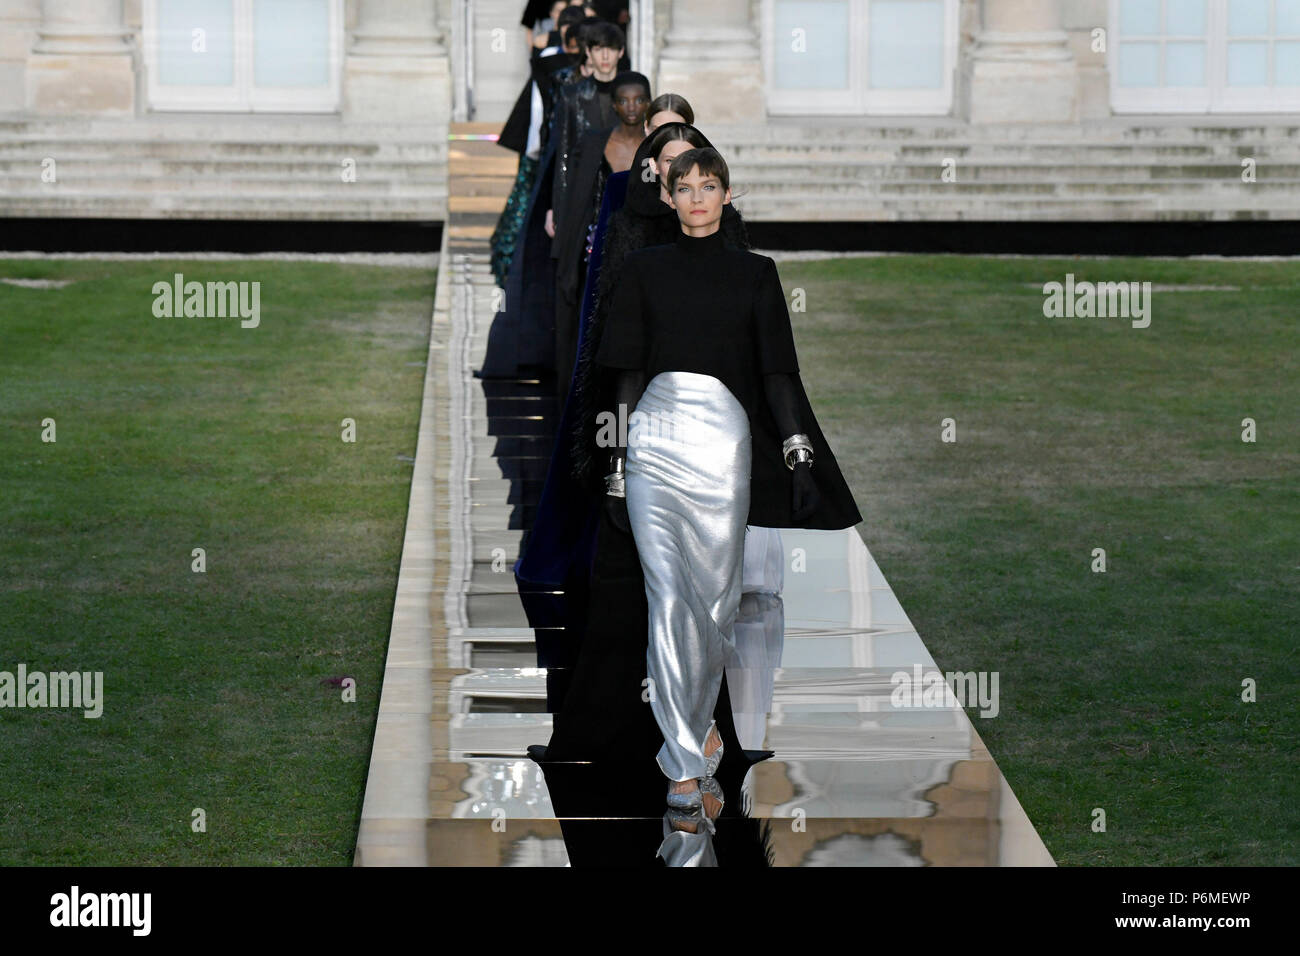 París, Francia. El 1 de julio, 2018. Modelos presentan las creaciones de Givenchy Haute Couture durante el otoño/invierno 2018/19 desfiles de moda en París, Francia, el 1 de julio de 2018. Crédito: Piero Biasion/Xinhua/Alamy Live News Foto de stock